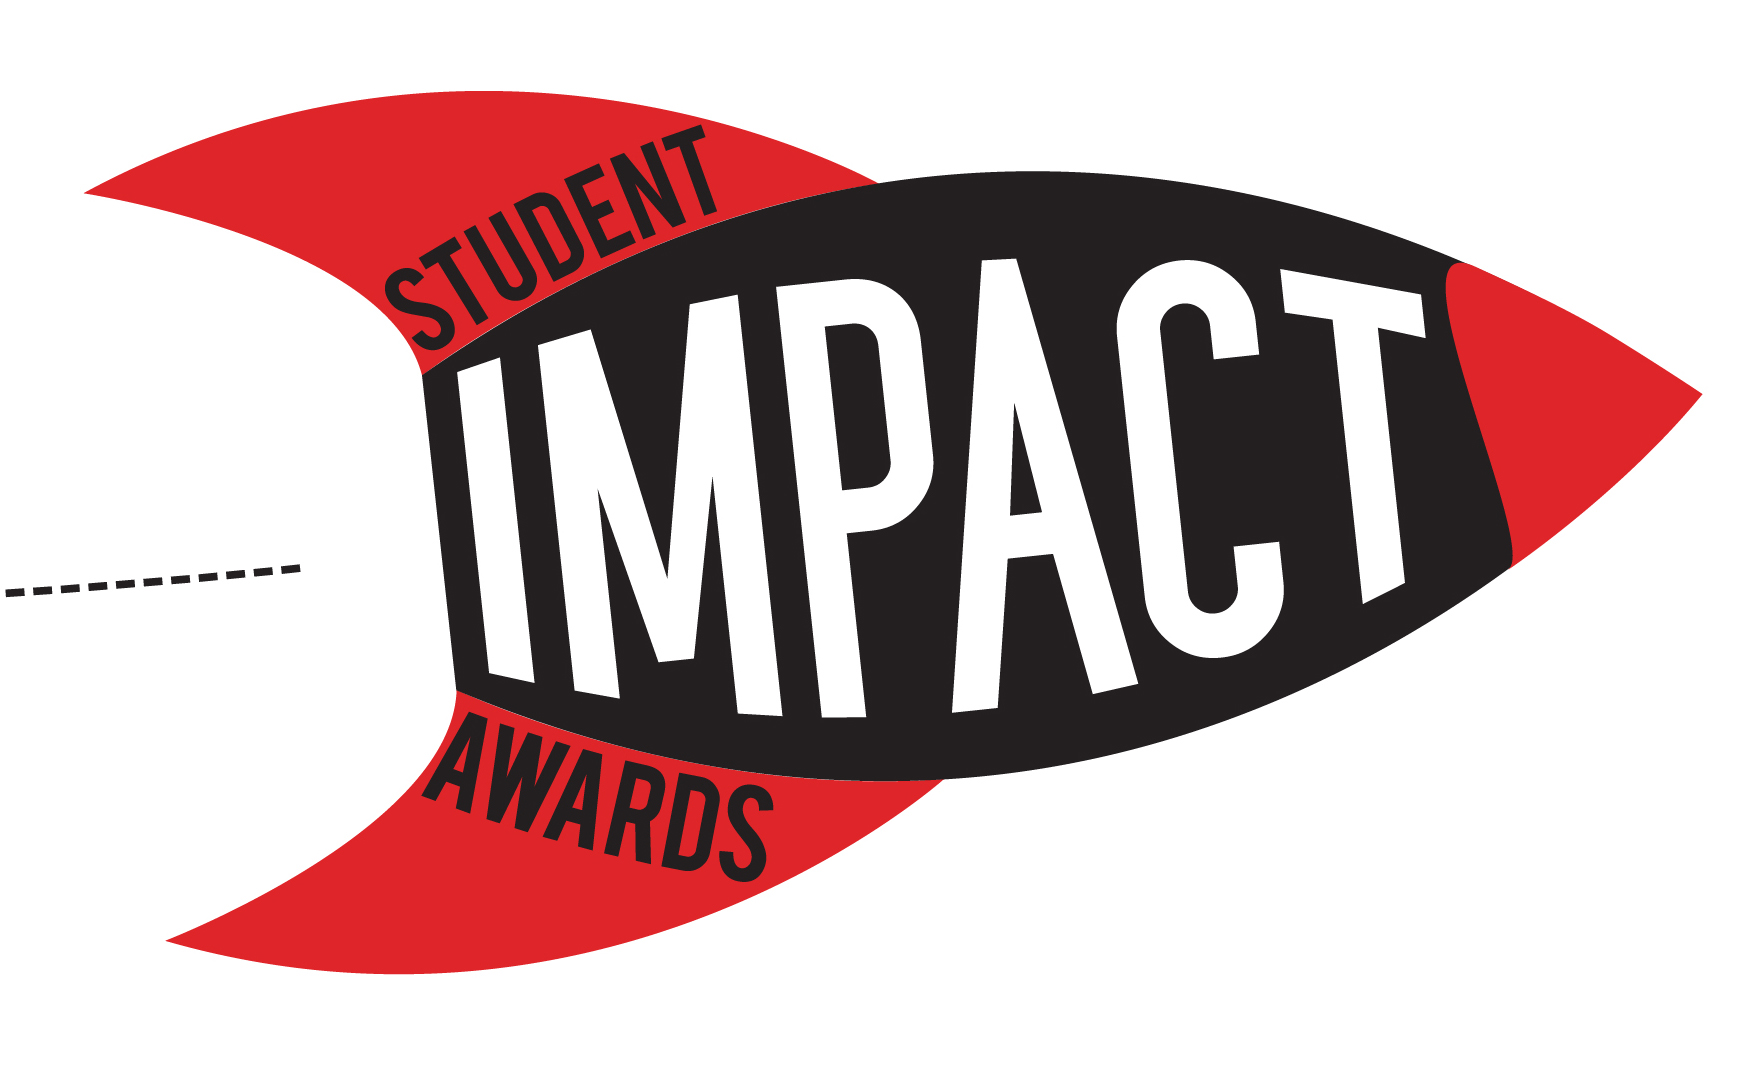 Student Impact Awards Logo